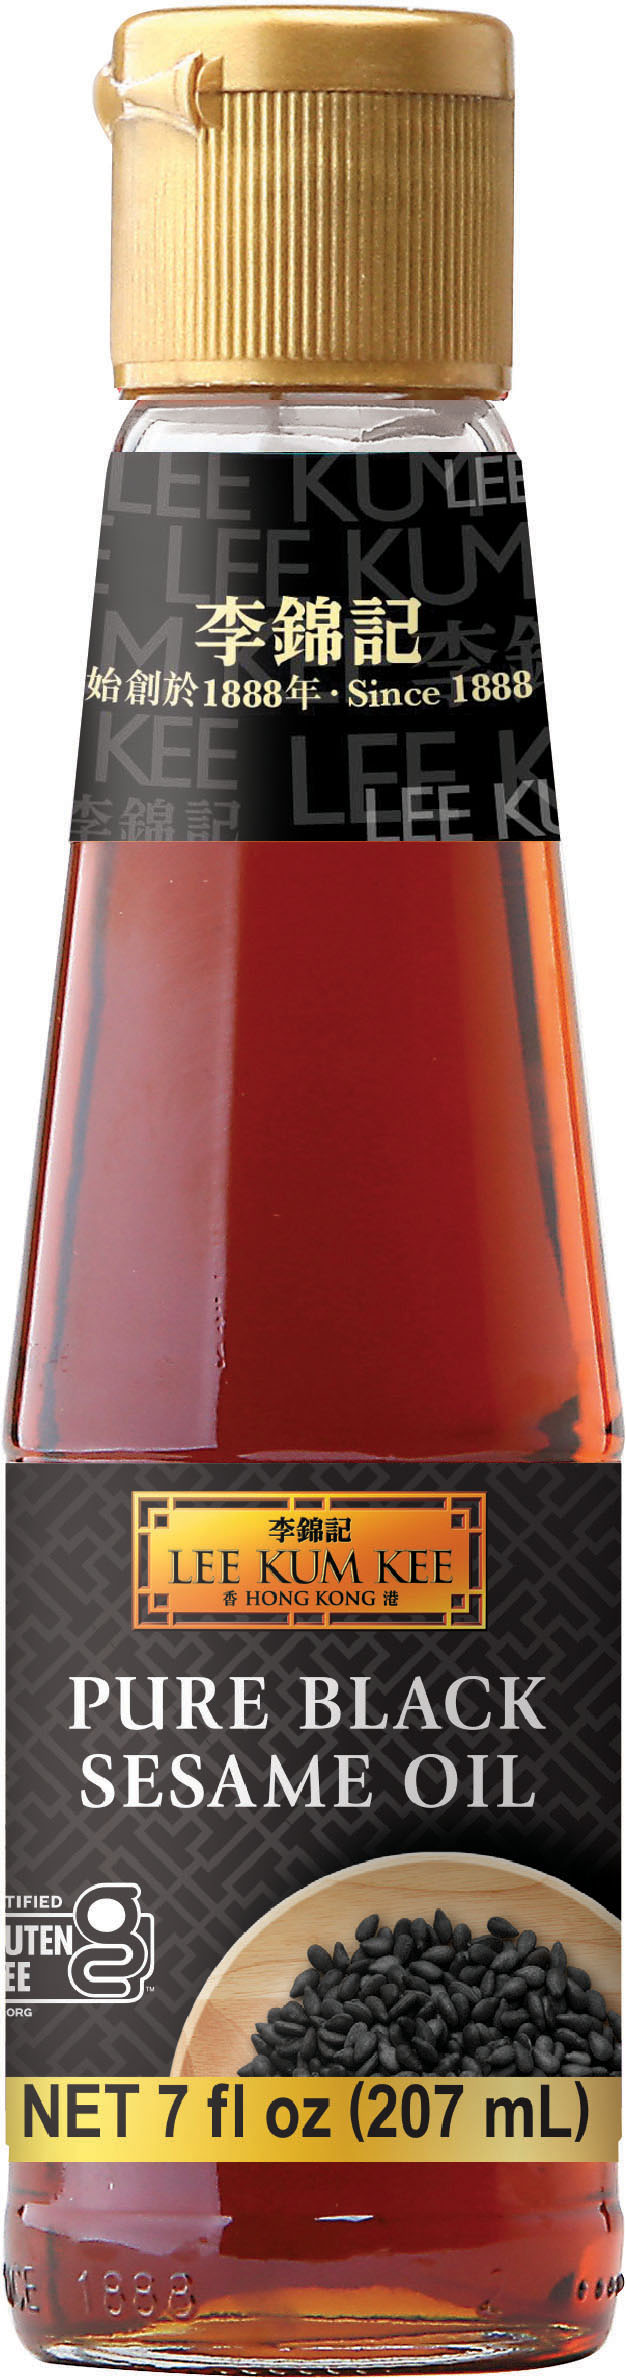 Pure Black Sesame Oil 7 oz (207 mL), Bottle